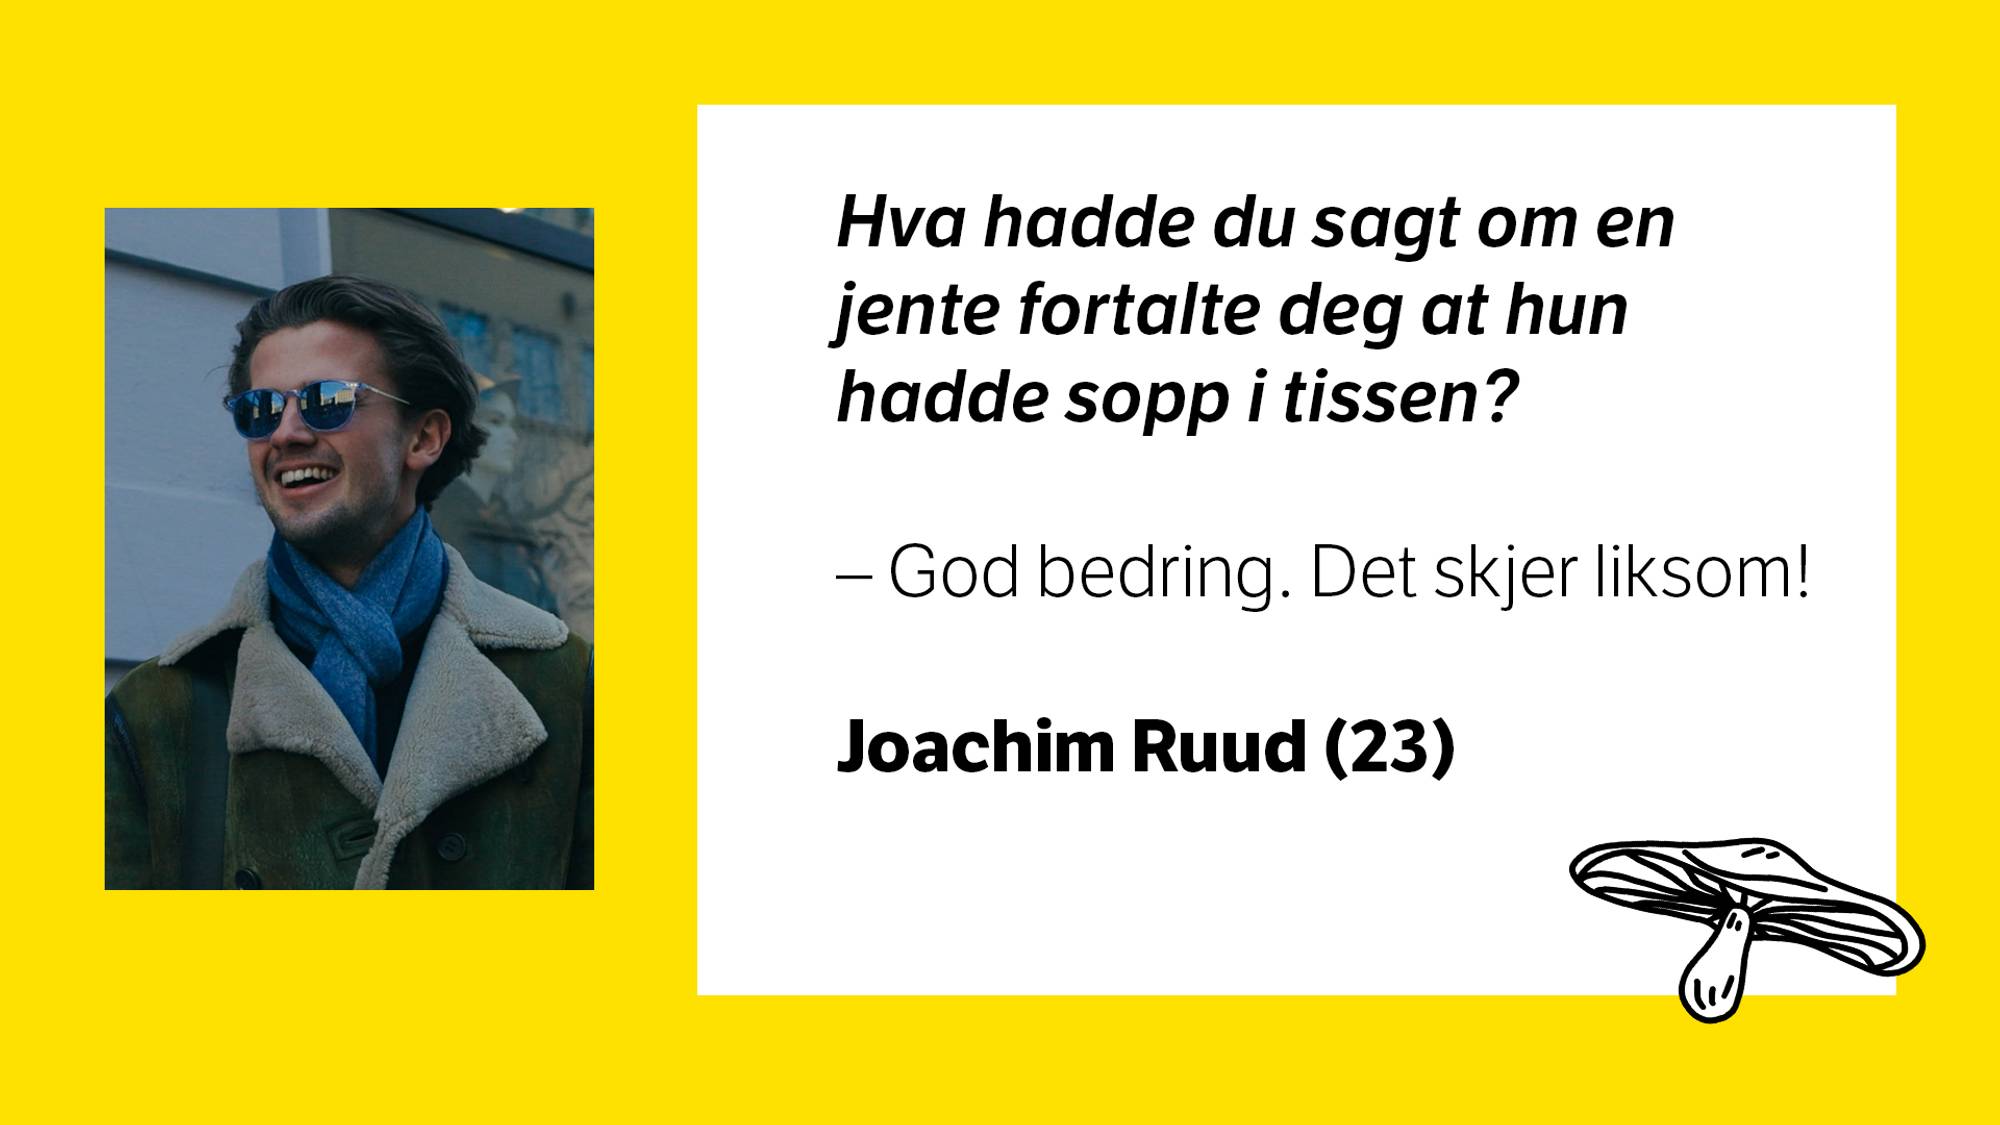 Bilde av Joachim Ruud (23) med tilhørende tekst: \nHva hadde du sagt om en jente fortalte deg at hun hadde sopp i tissen? \n- God bedring. Det skjer liksom!